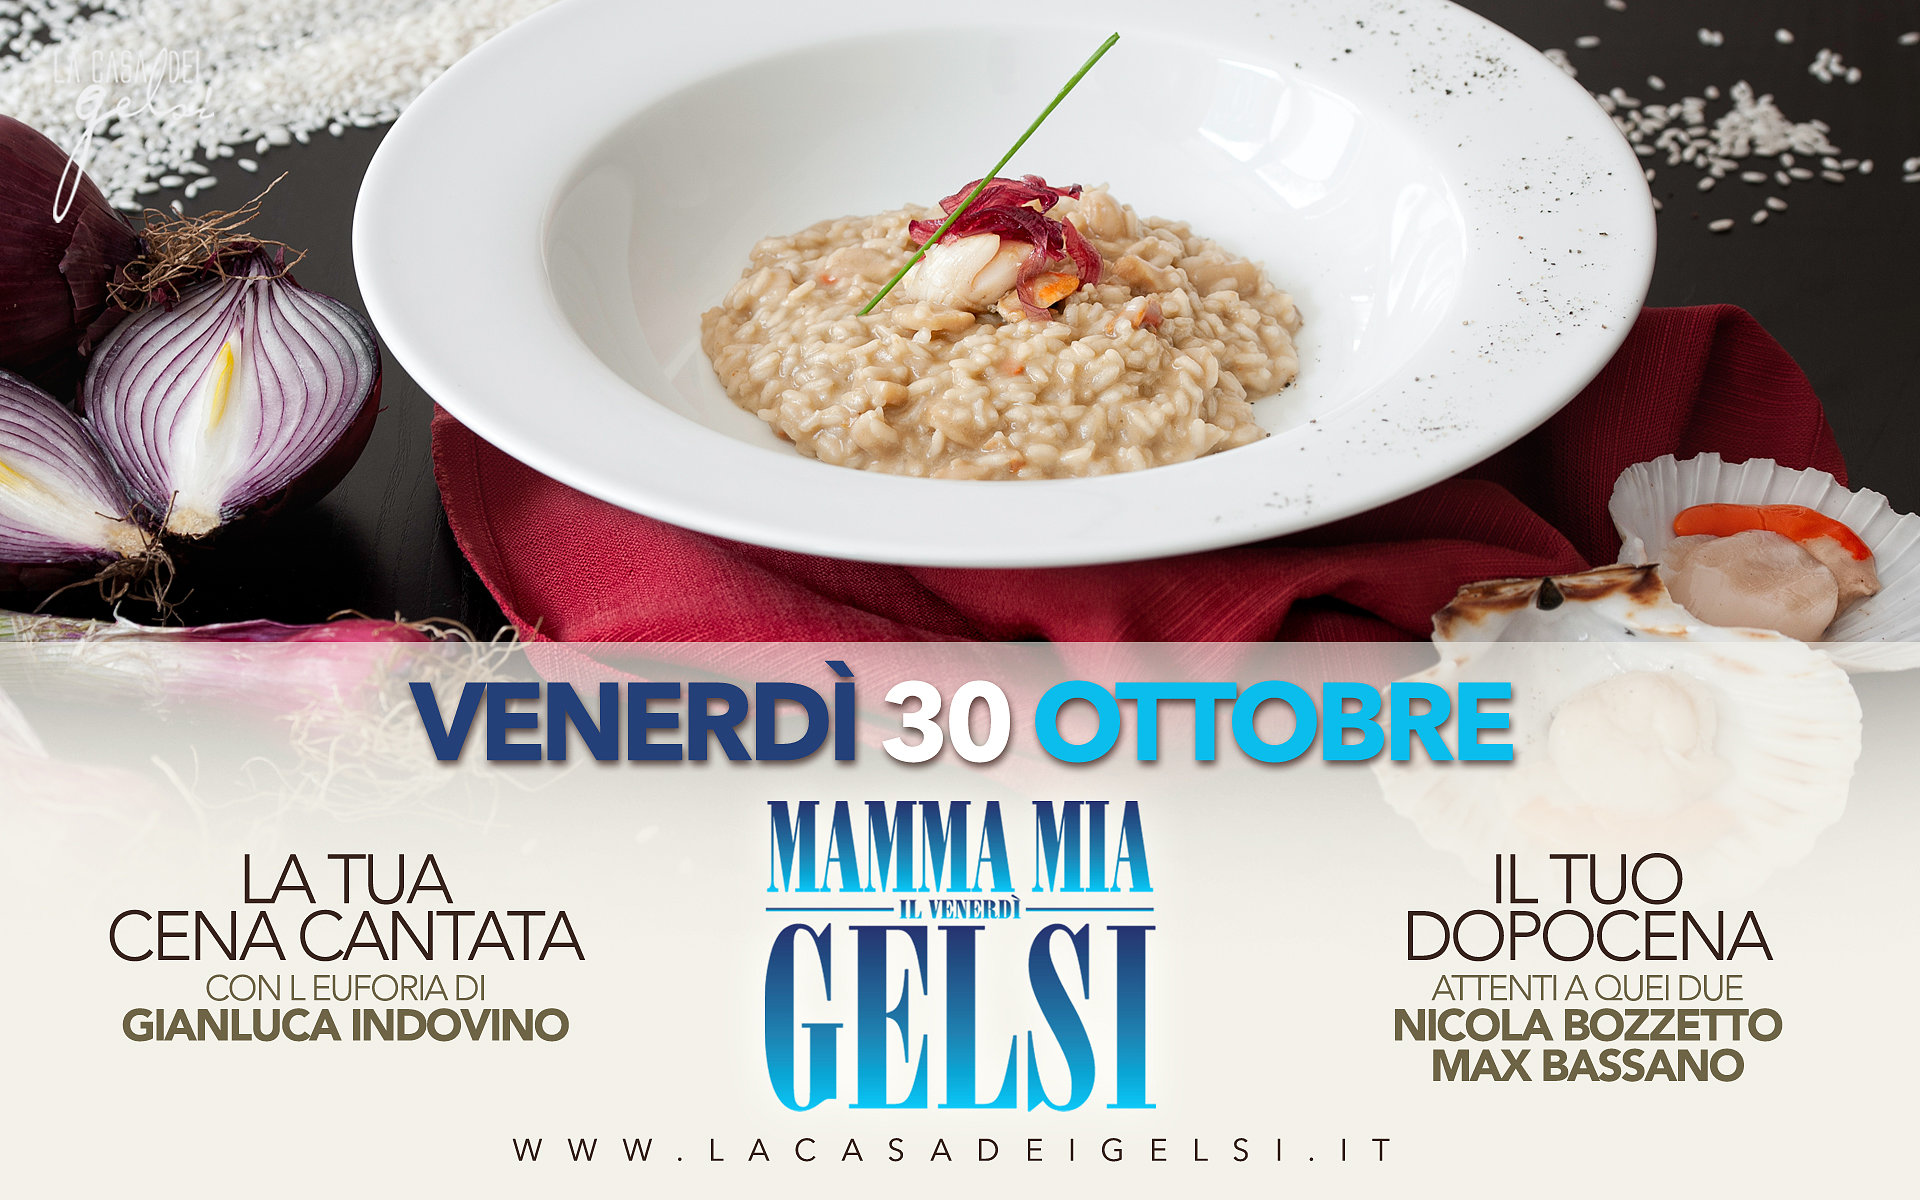 Gelsi Cena cantata 30 ottobre 2015